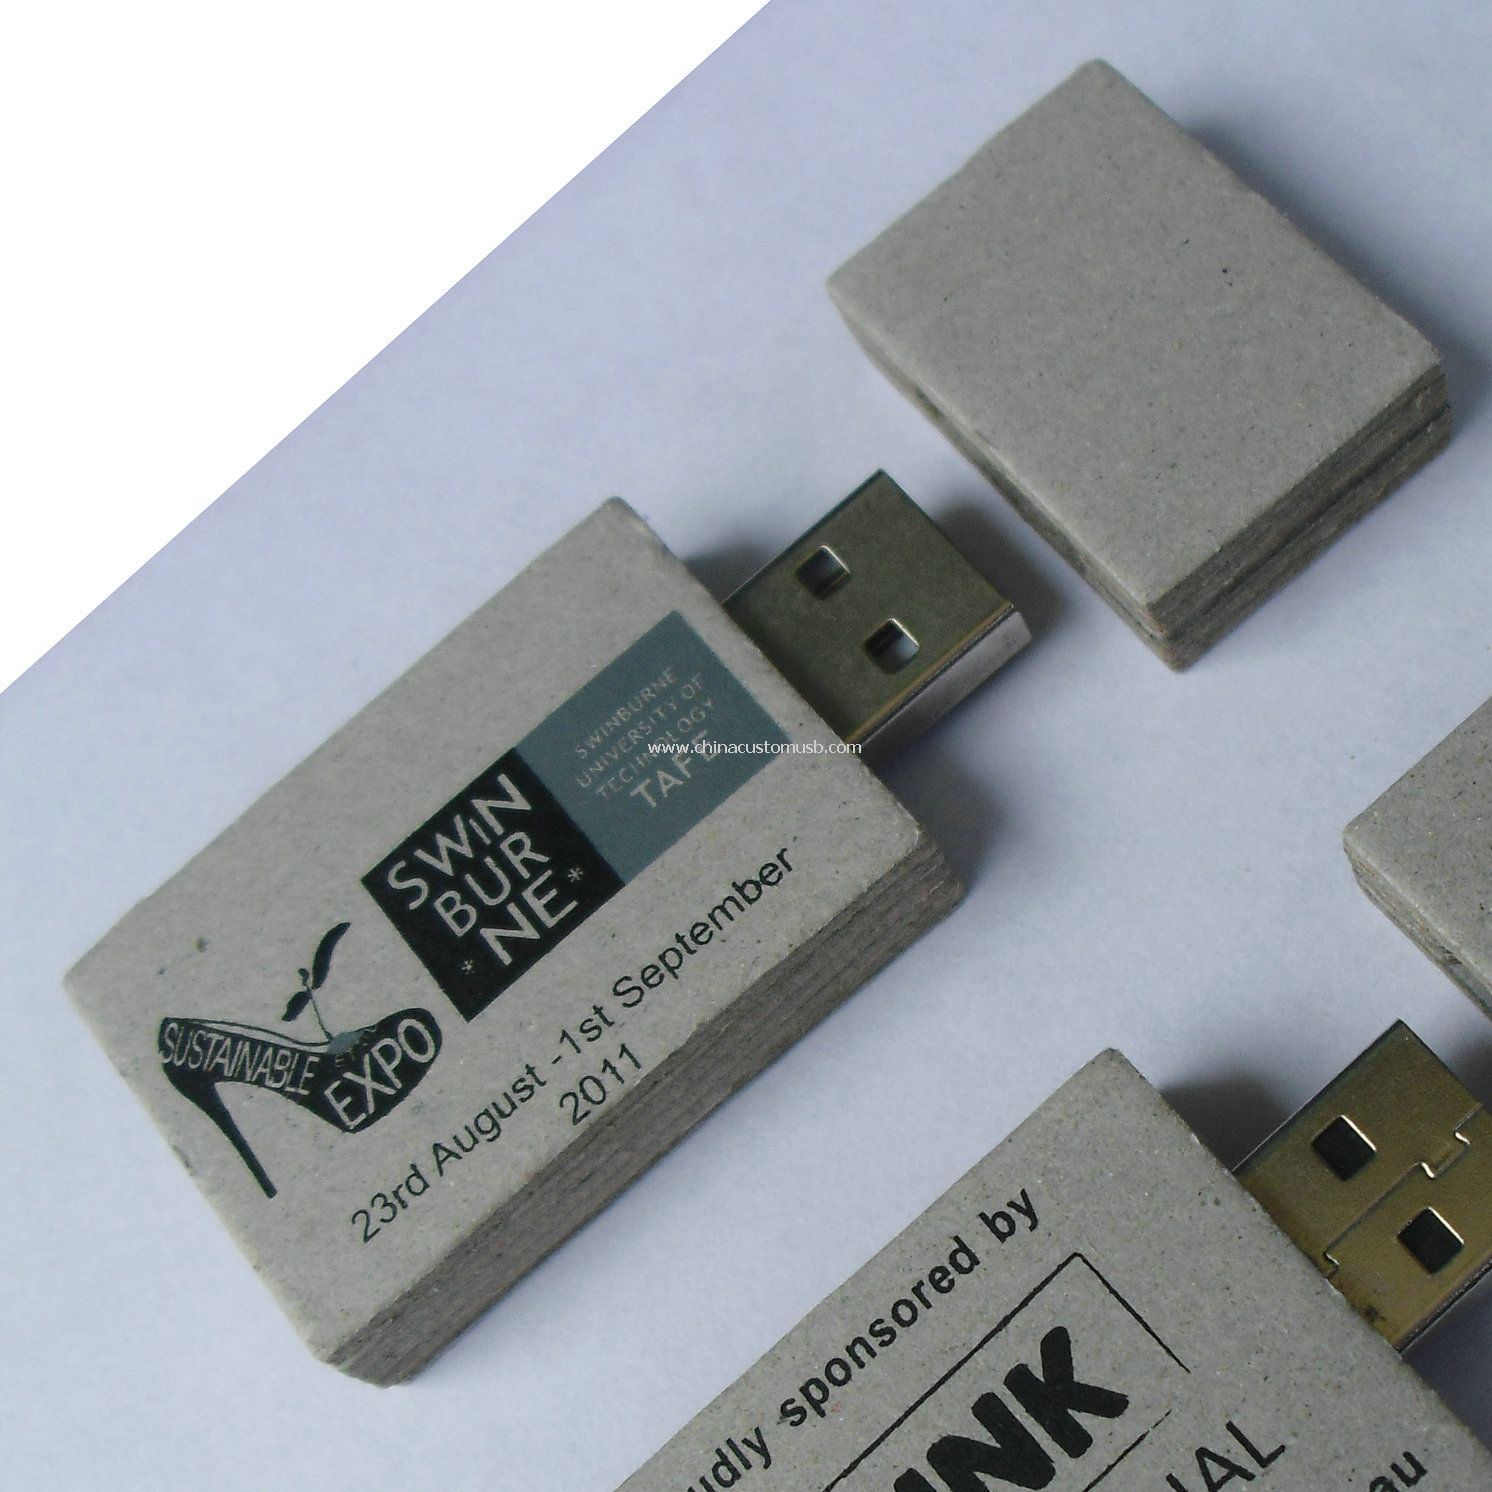 Kertas khusus USB disk